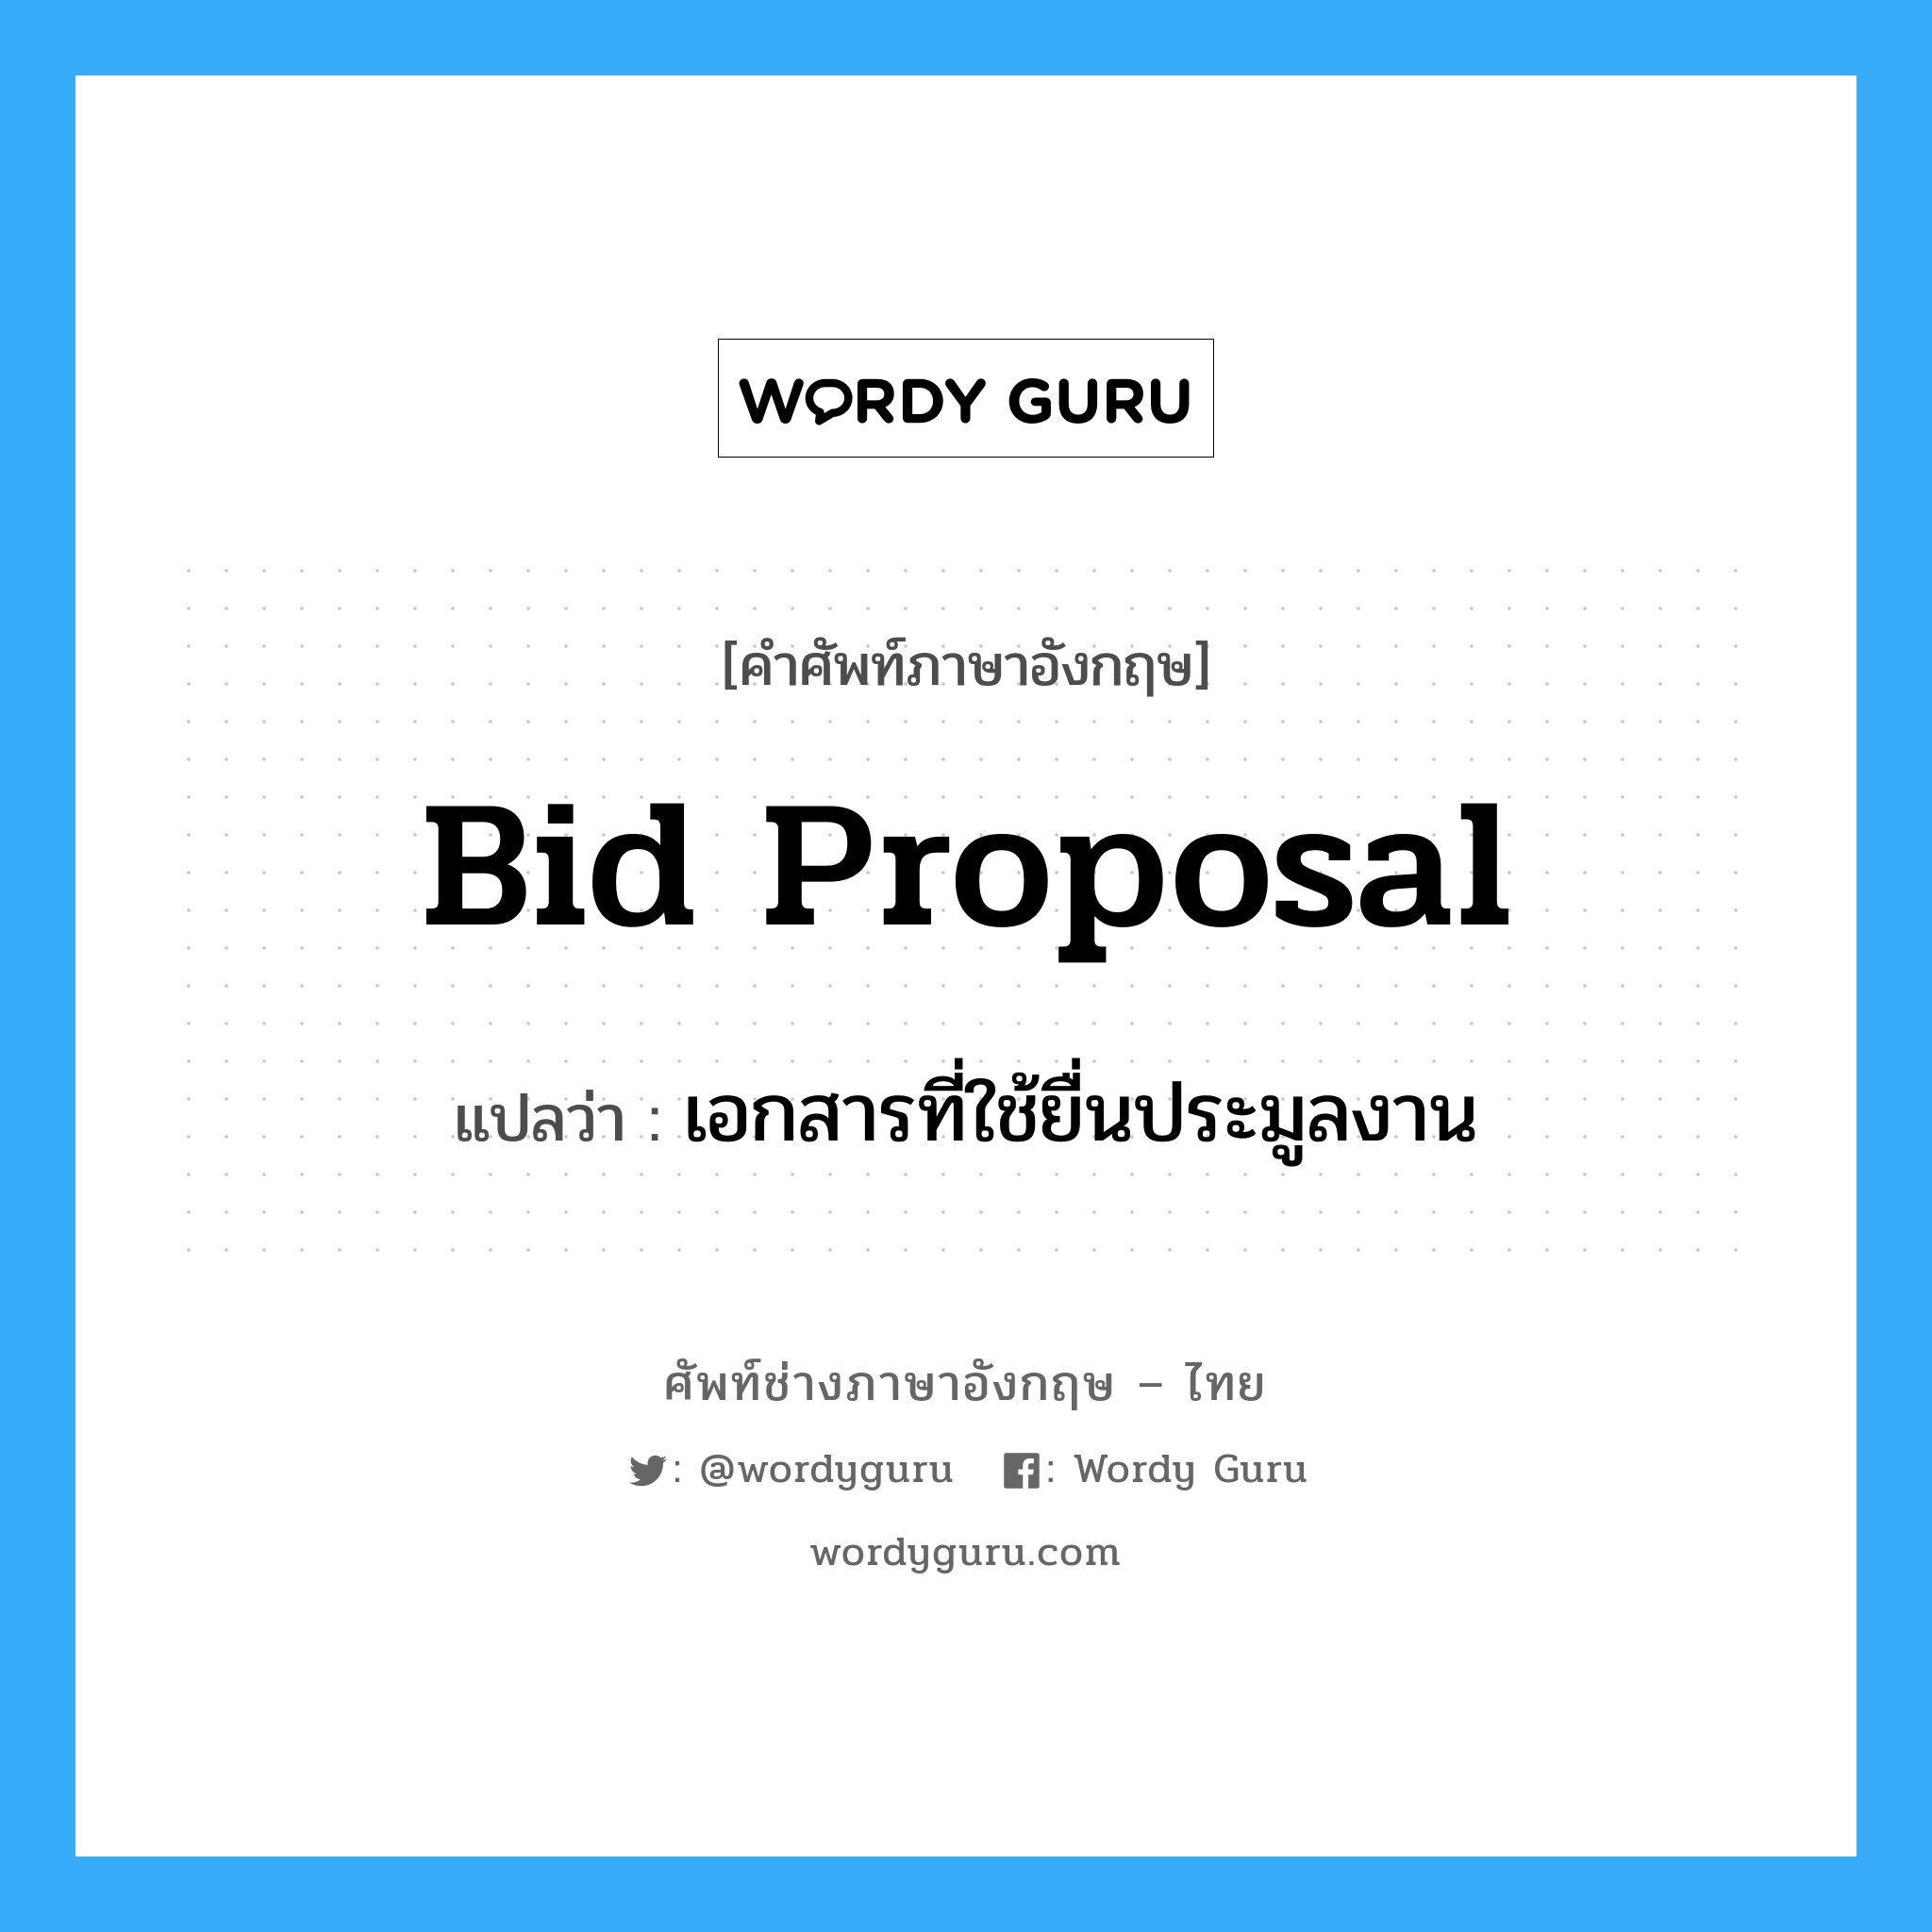 Bid Proposal แปลว่า?, คำศัพท์ช่างภาษาอังกฤษ - ไทย Bid Proposal คำศัพท์ภาษาอังกฤษ Bid Proposal แปลว่า เอกสารที่ใช้ยื่นประมูลงาน